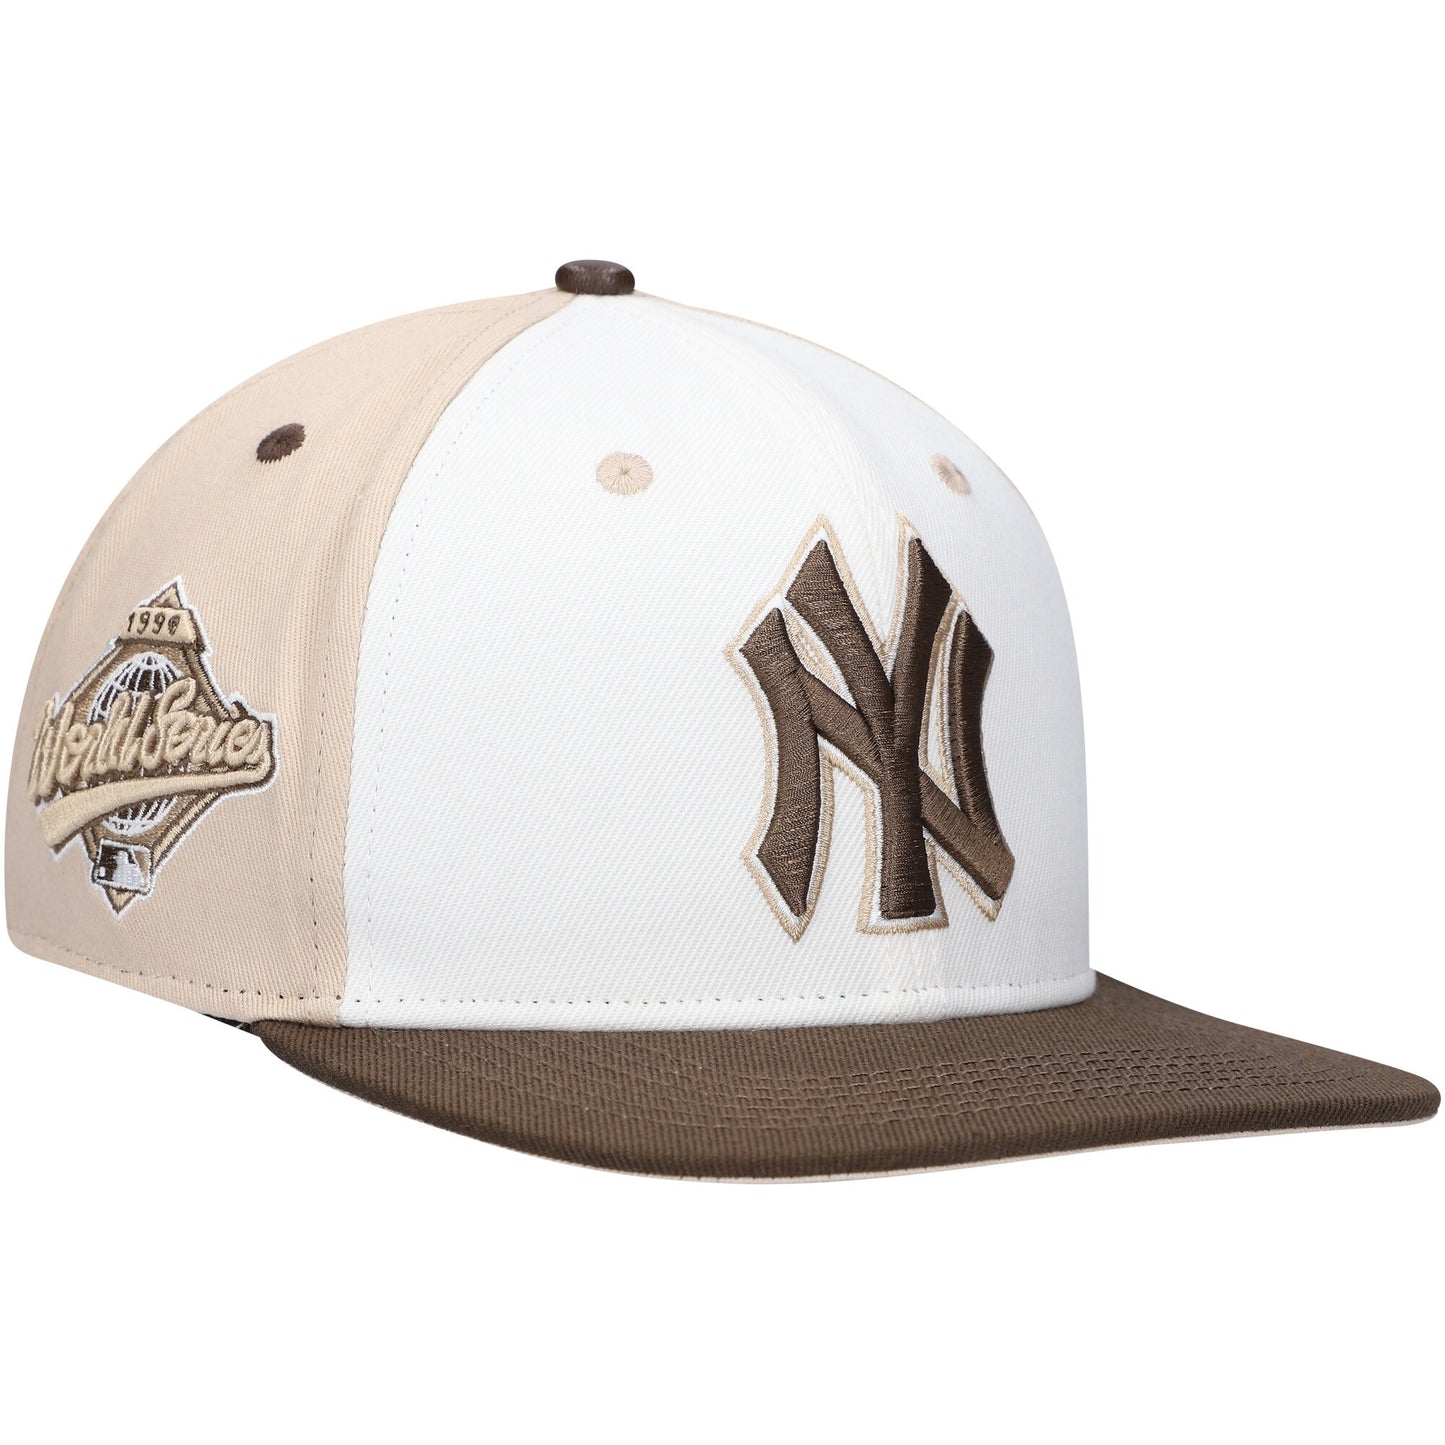 New York Yankees Pro Standard Chocolate Ice Cream Drip Snapback Hat - White/Brown